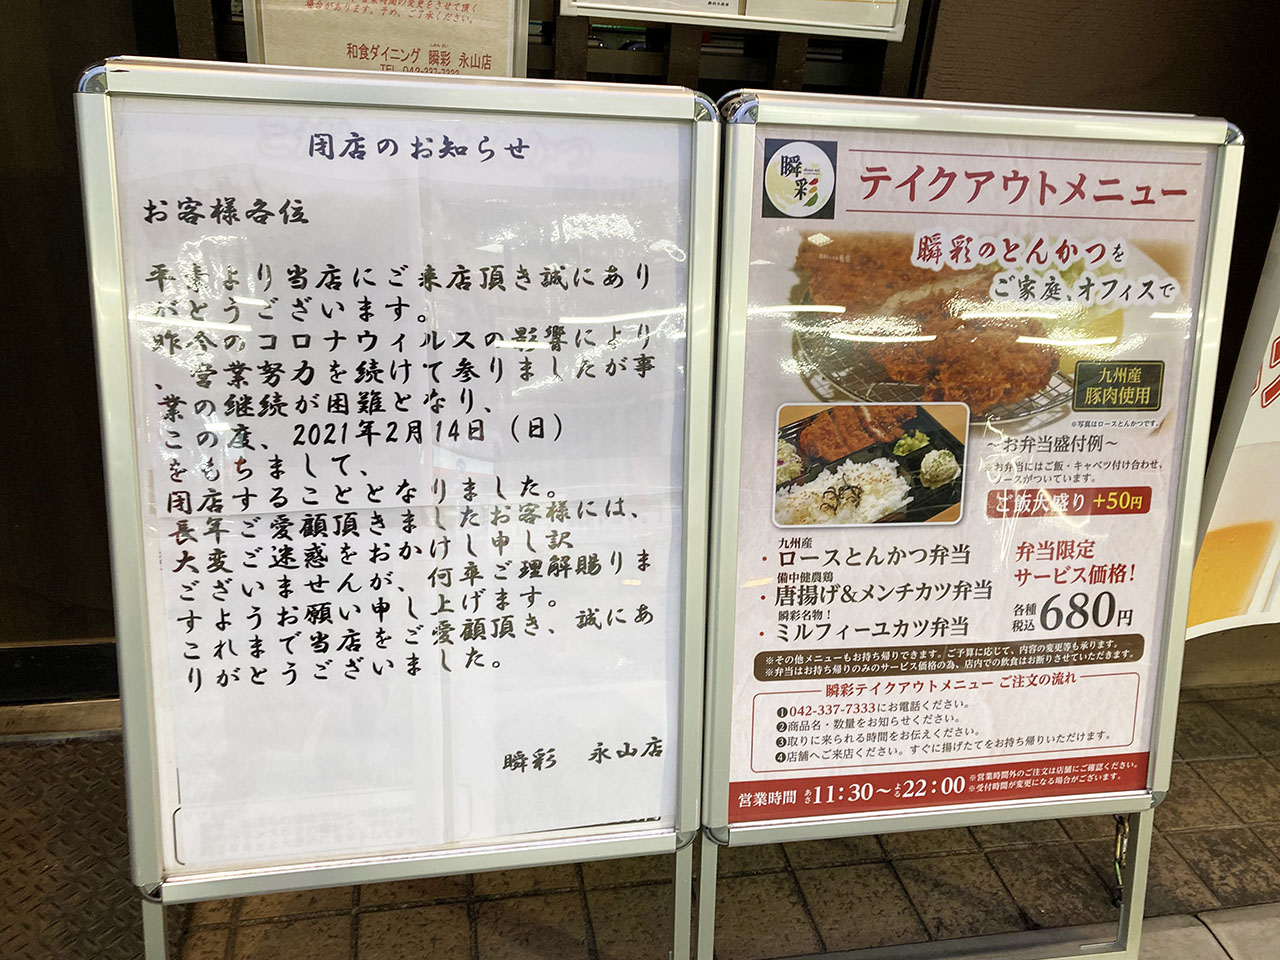 『瞬彩 永山店』と『徳福 永山店』が2月14日に閉店するそうです